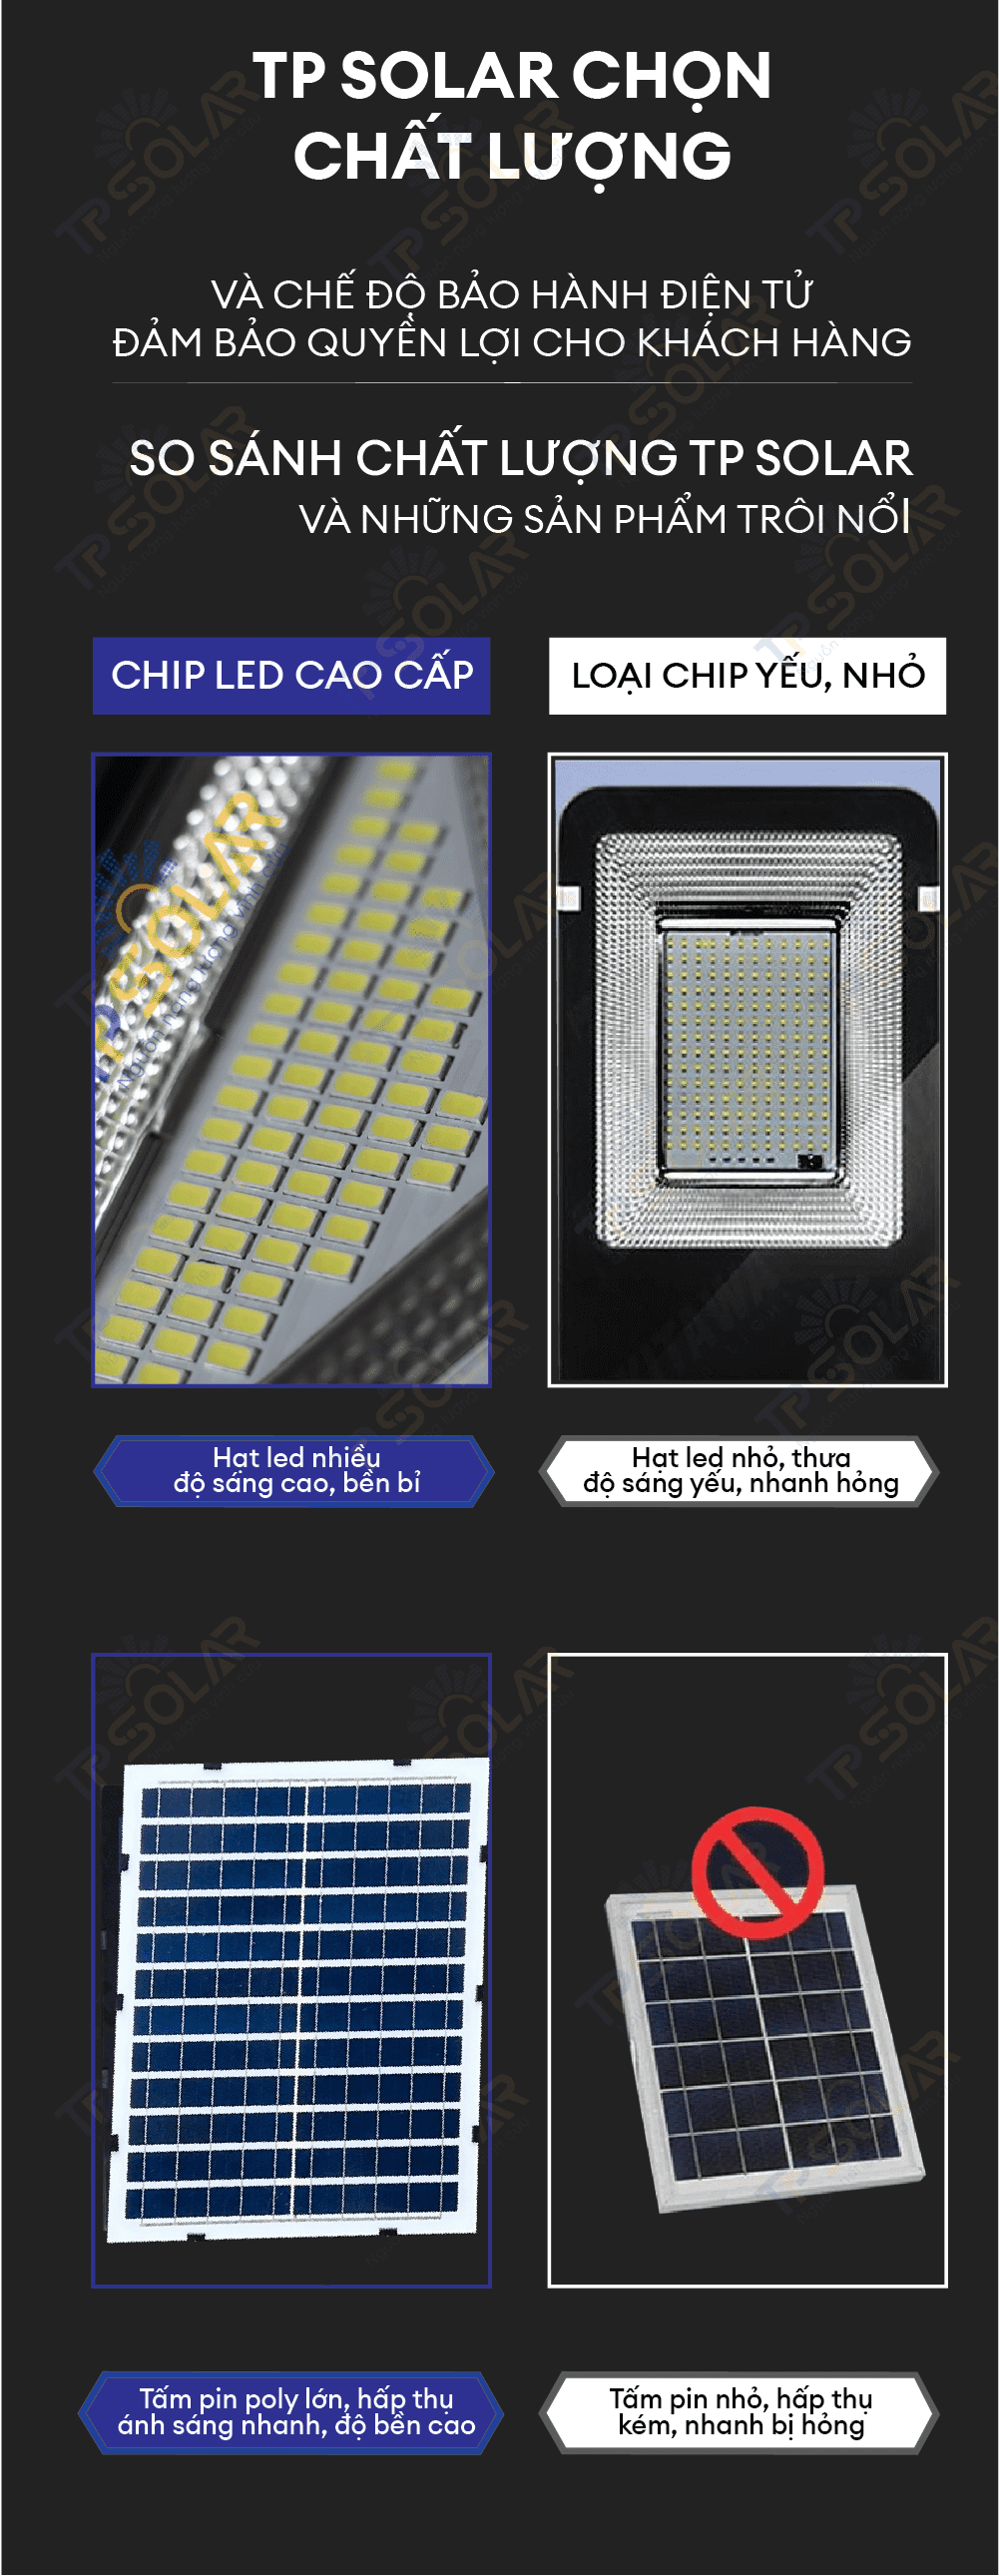 so sánh chất lượng của đèn tp solar với hàng trôi nổi